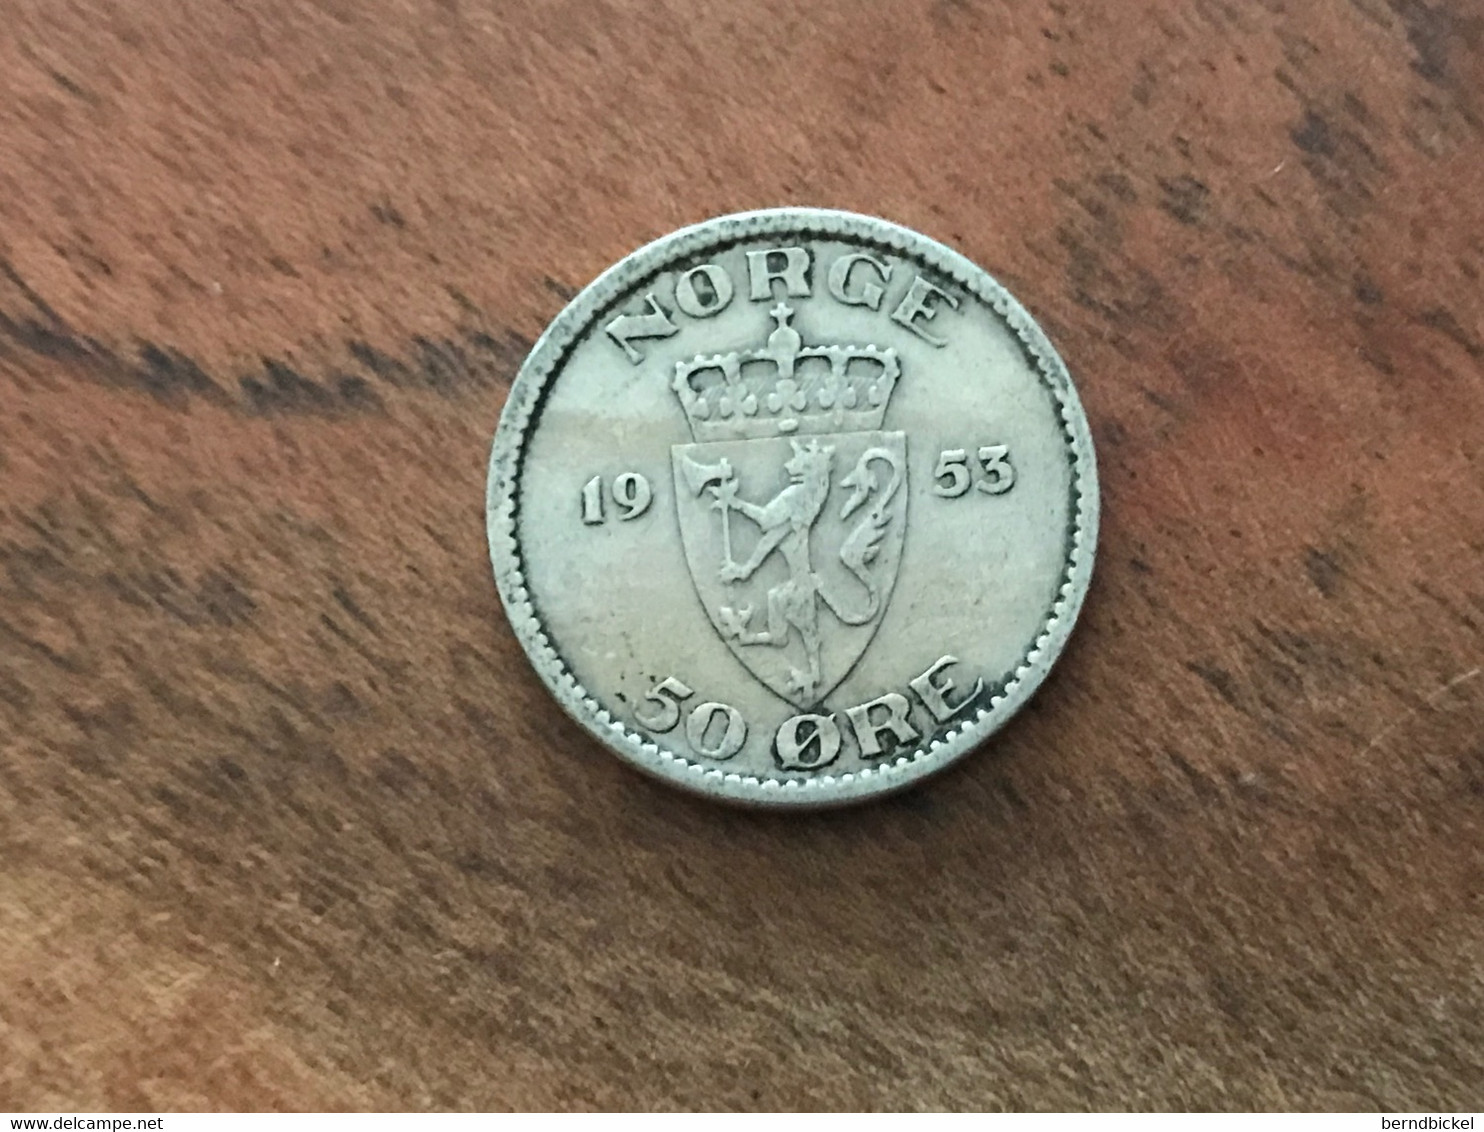 Münze Münzen Umlaufmünze Norwegen 50 Öre 1953 - Norvegia